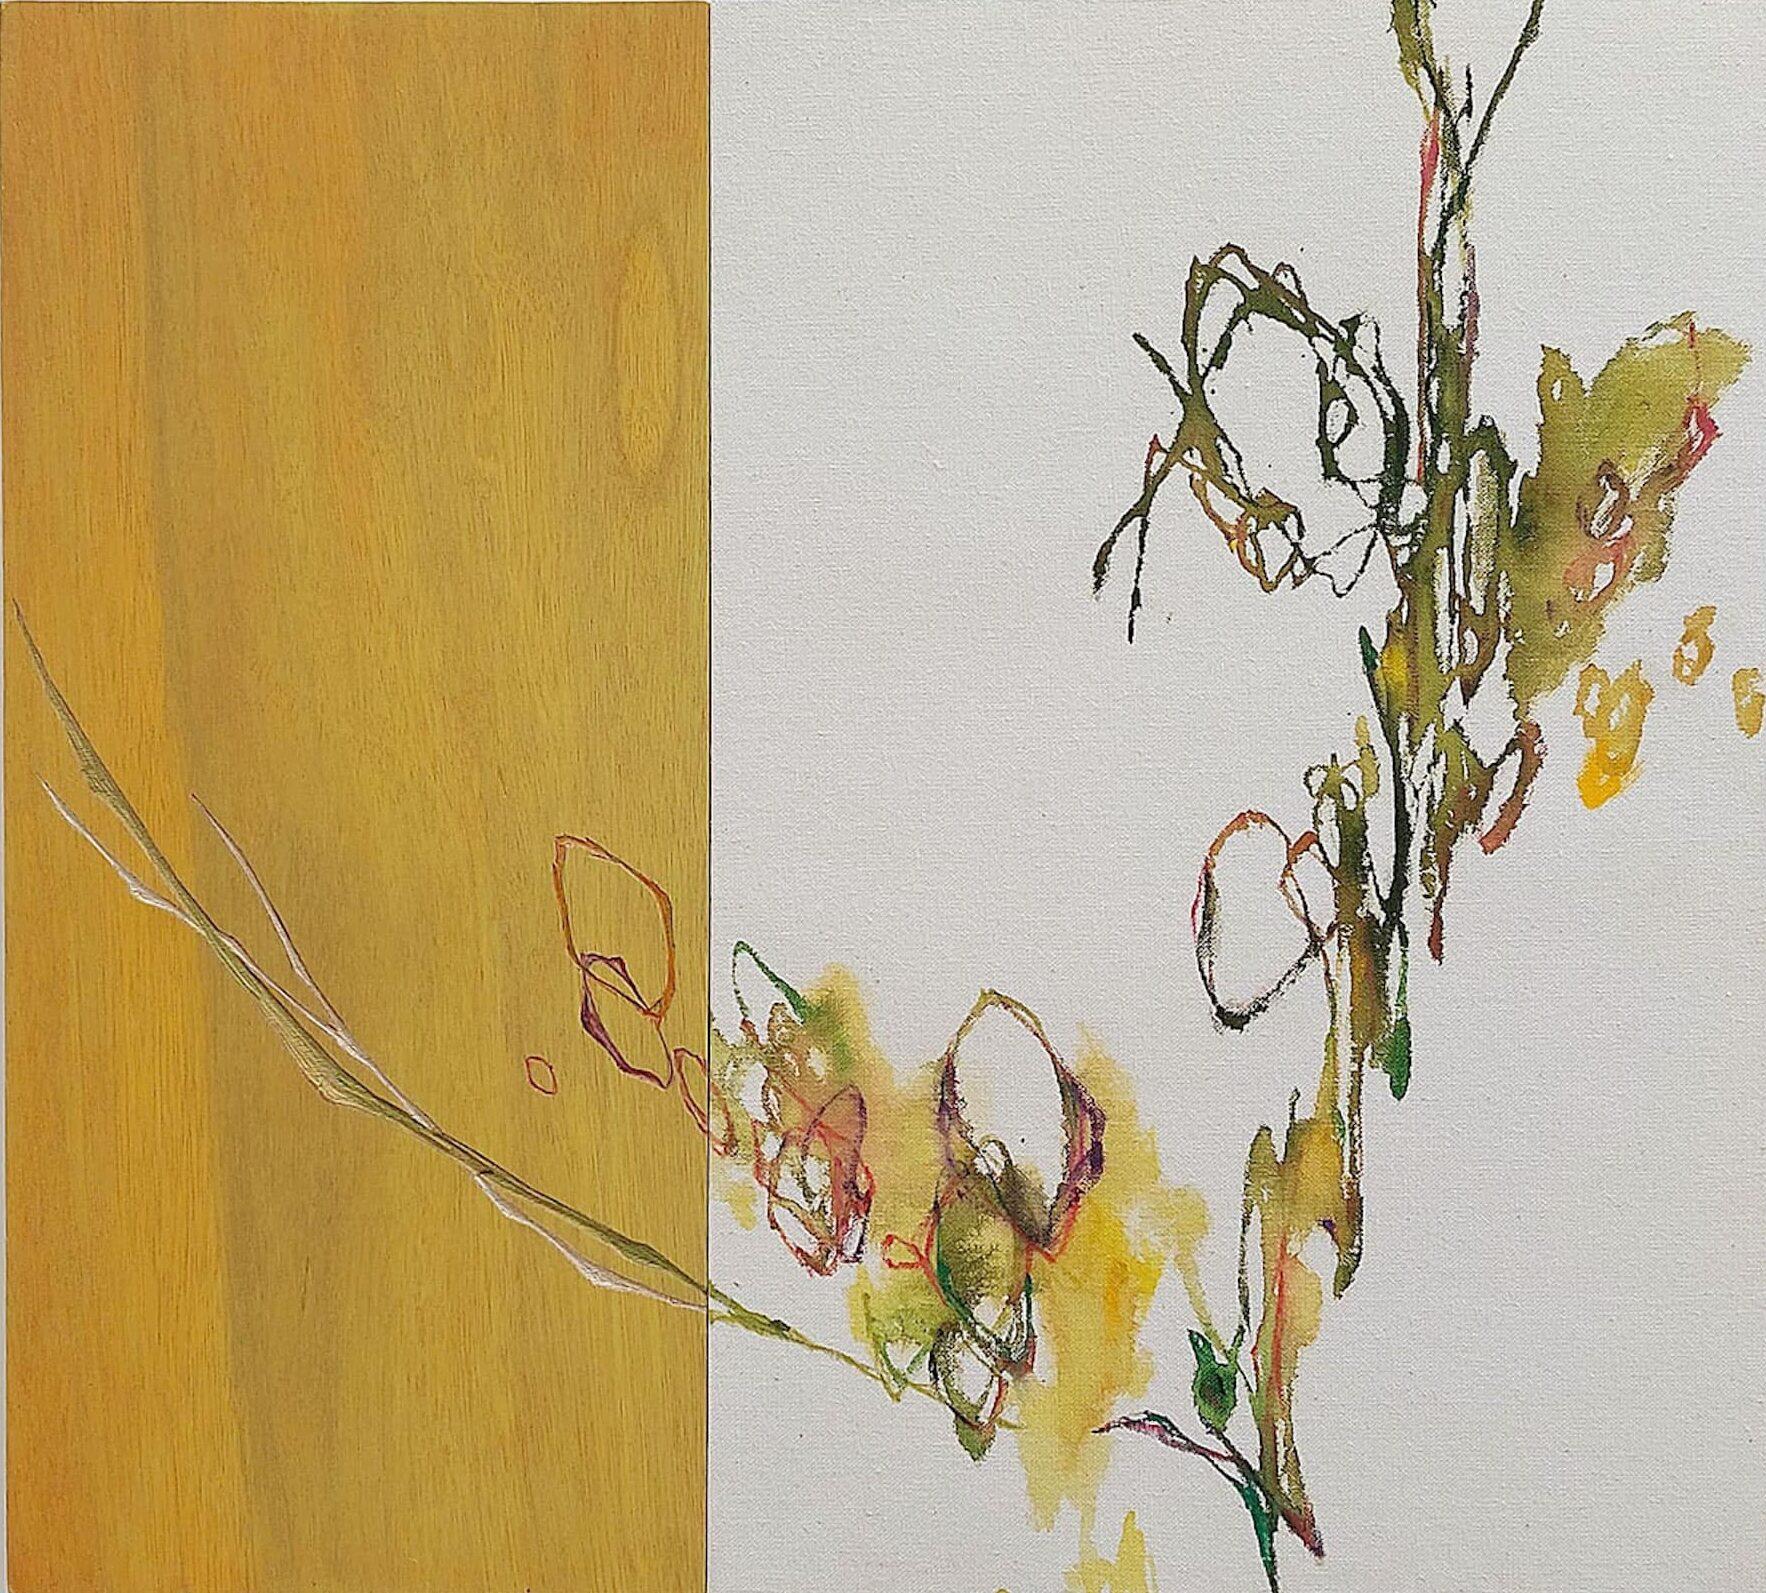 Newborn sound #83 von Maho Maeda - Abstraktes Gemälde, Blume, Leinwand und Holz